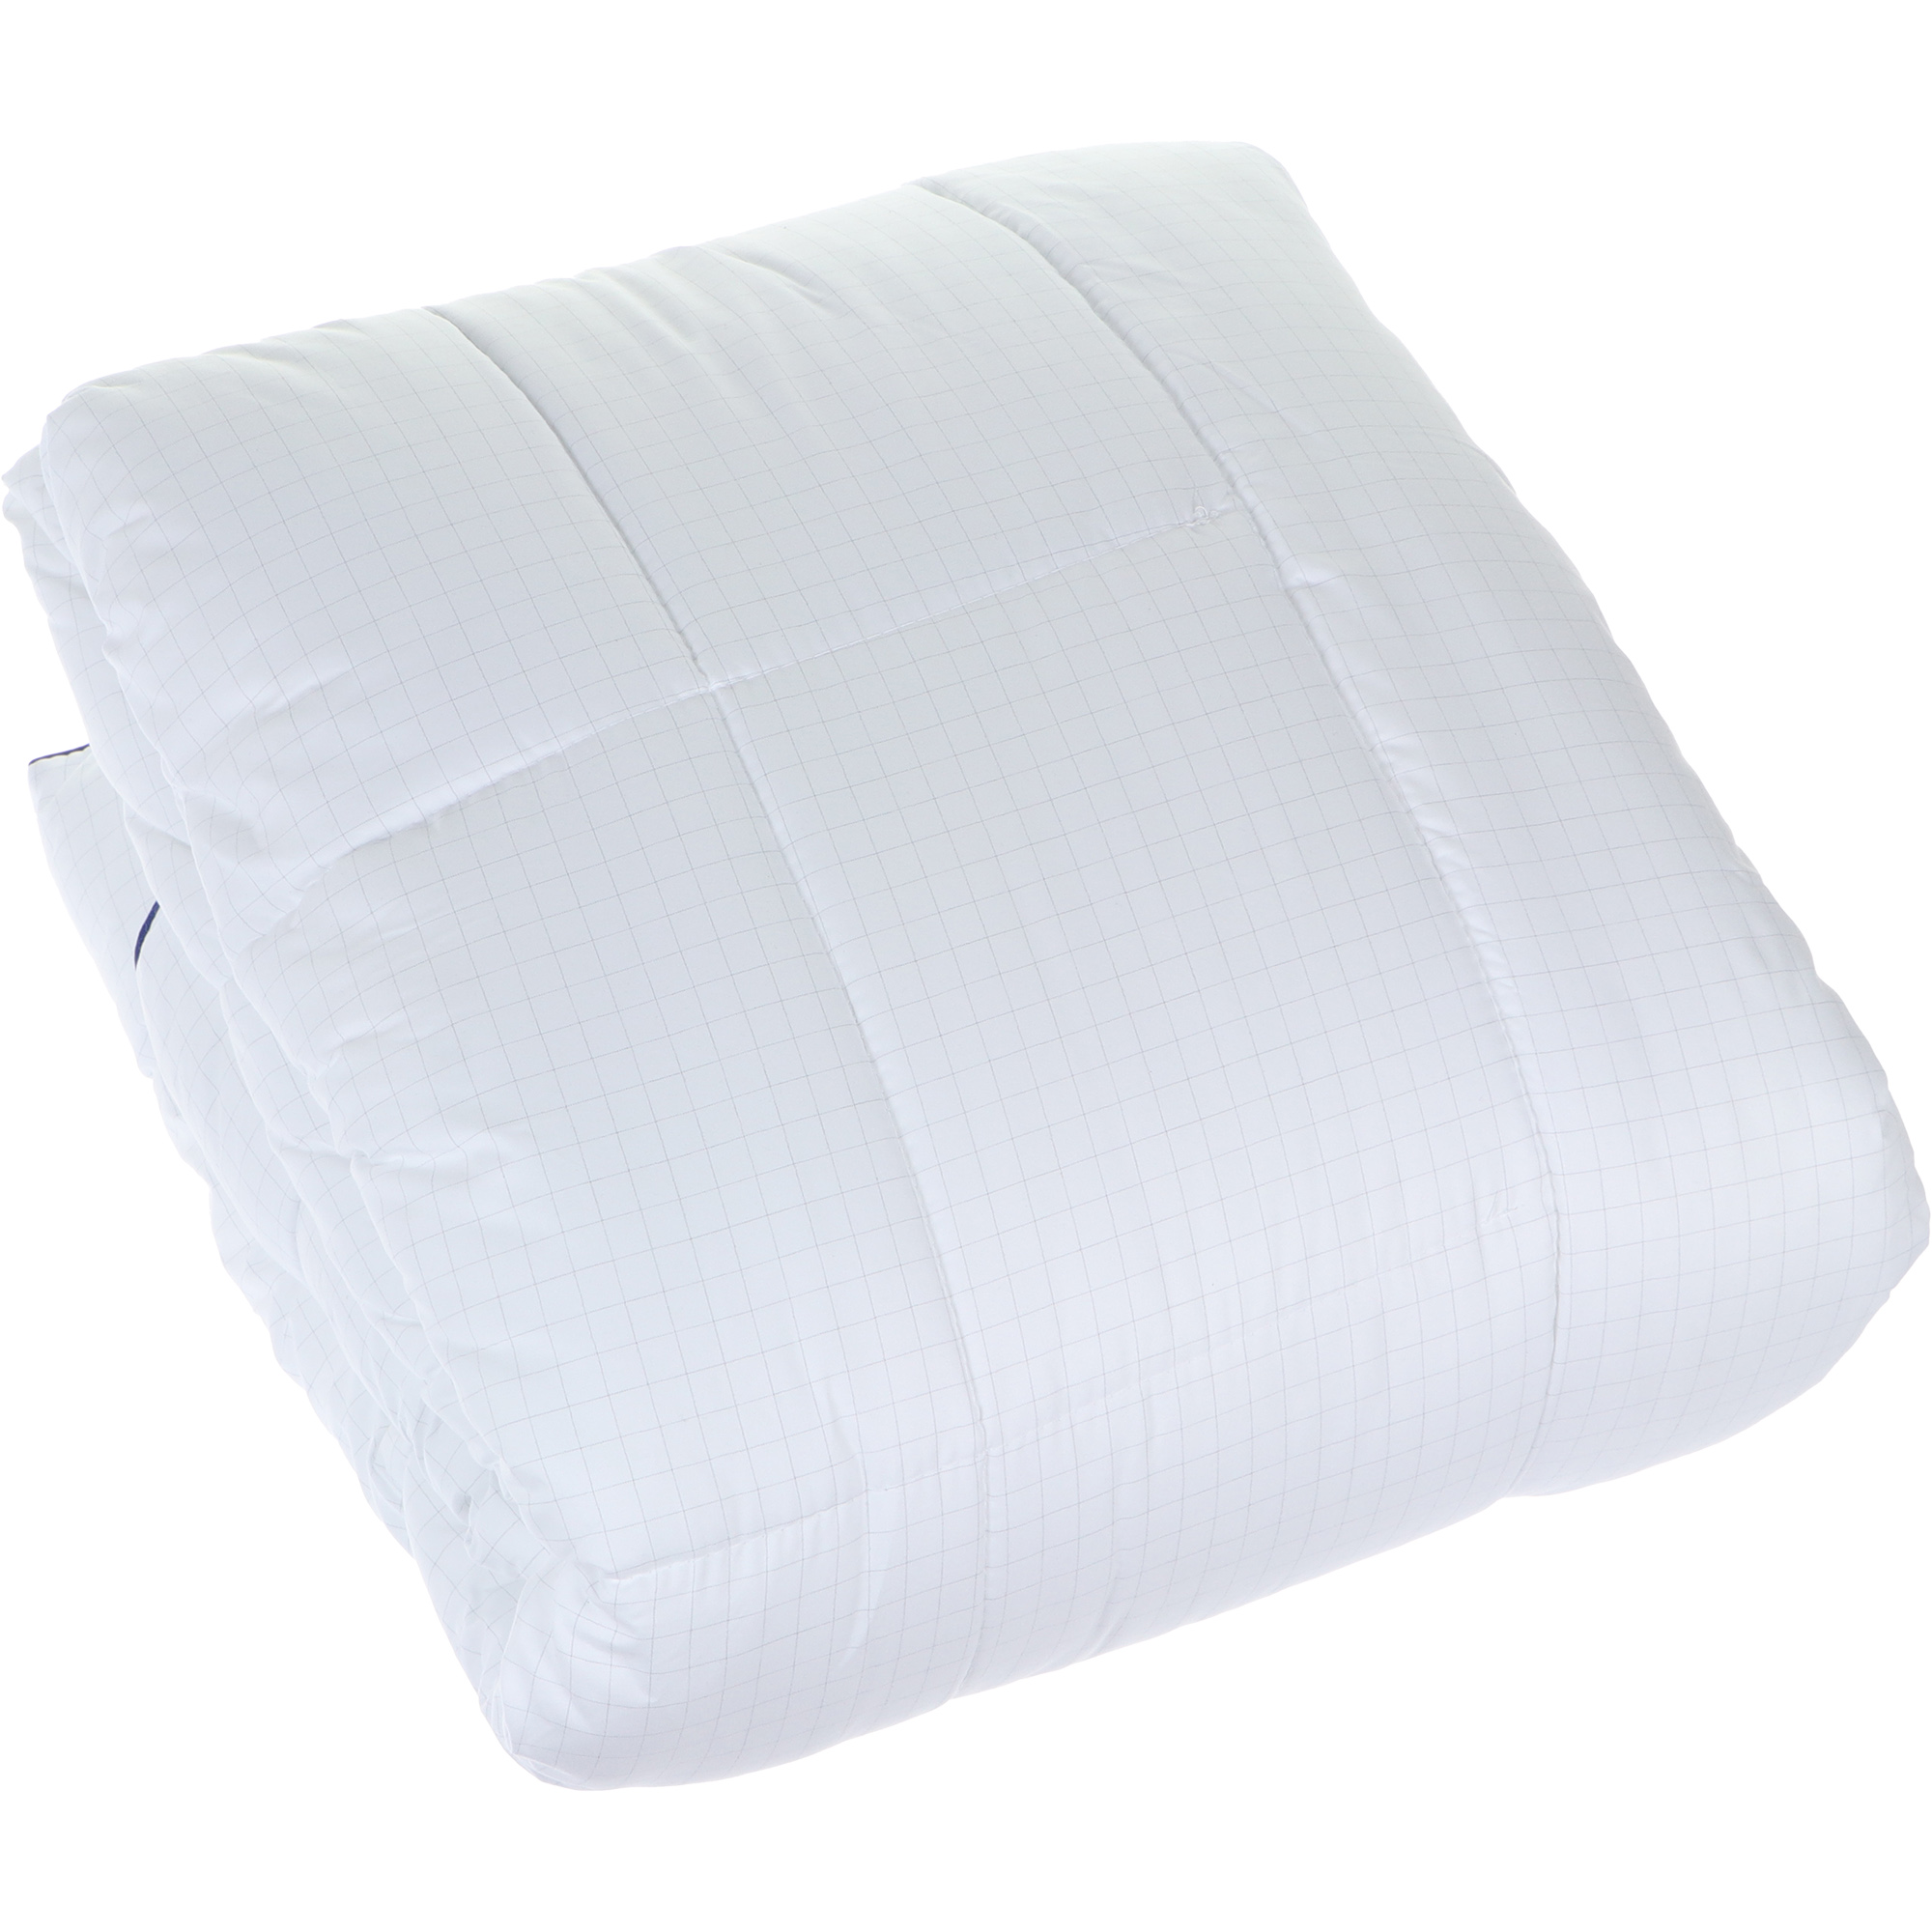 Одеяло Medsleep Nubi белое 175х200 см, цвет белый - фото 6